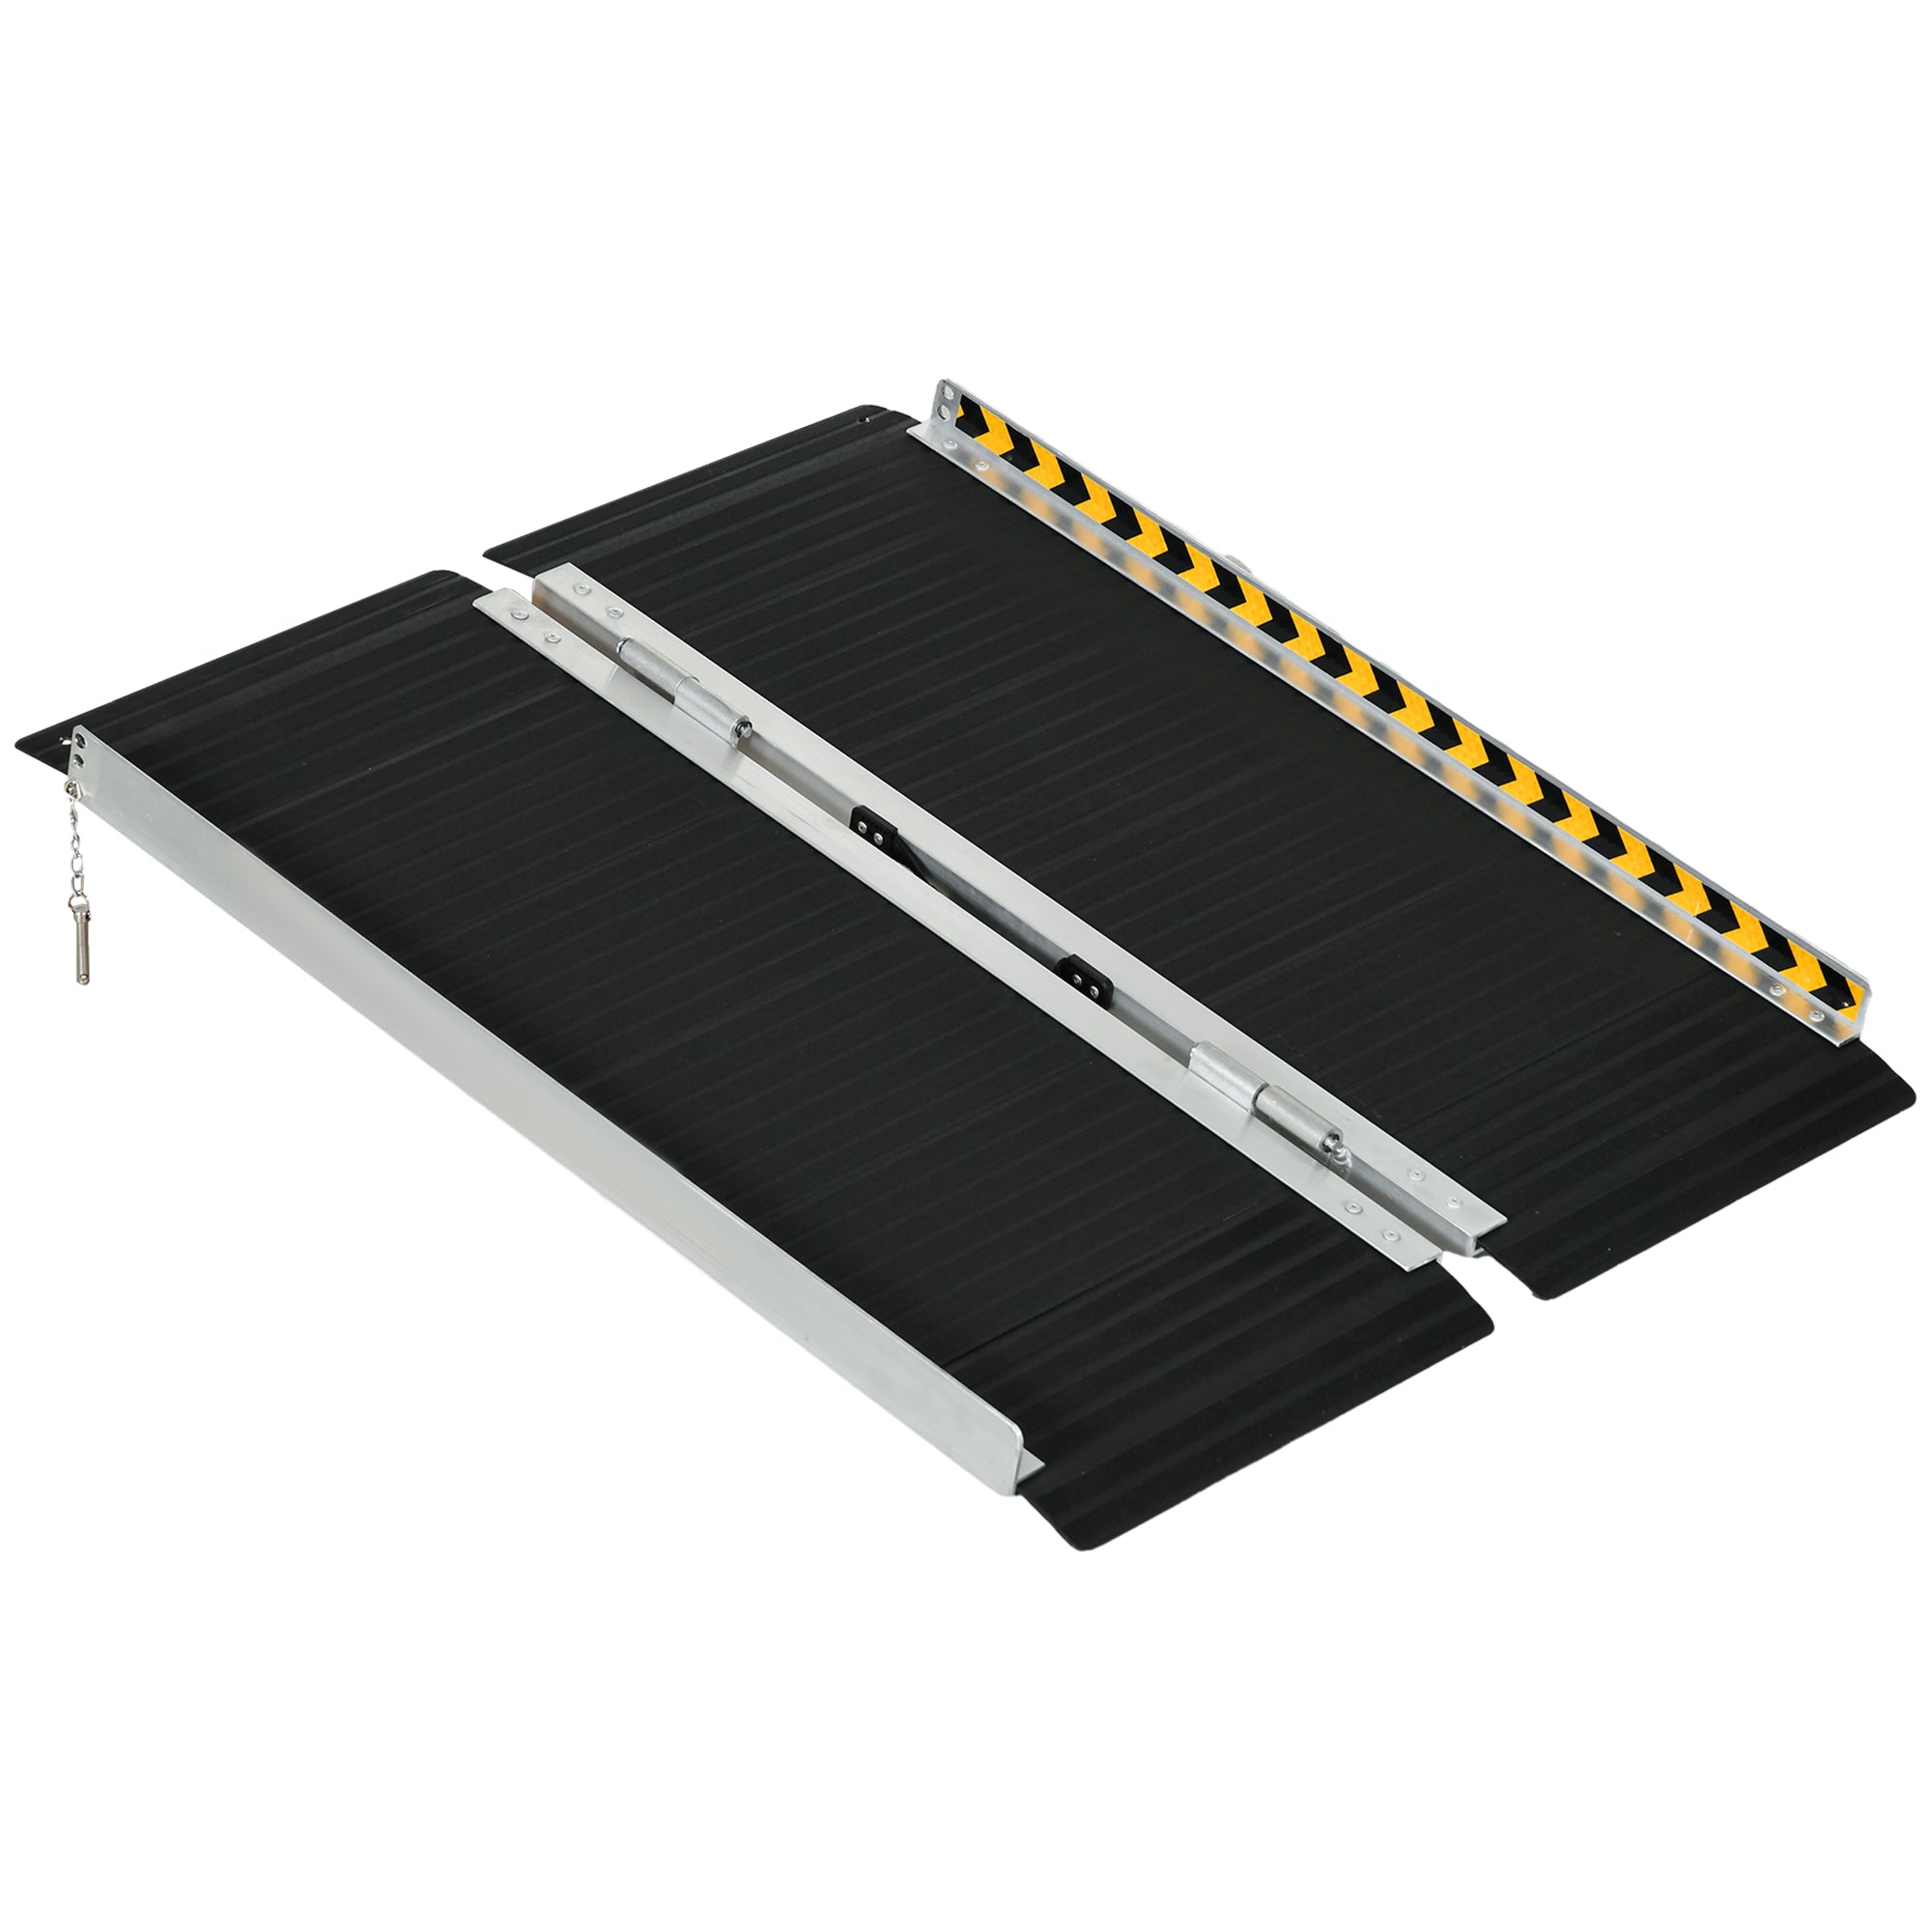 EASYCOMFORT Rampa per Sedia a Rotelle Pieghevole in Alluminio con  Deflettori e Adesivi, 122x73.6x5.1 cm, Nero